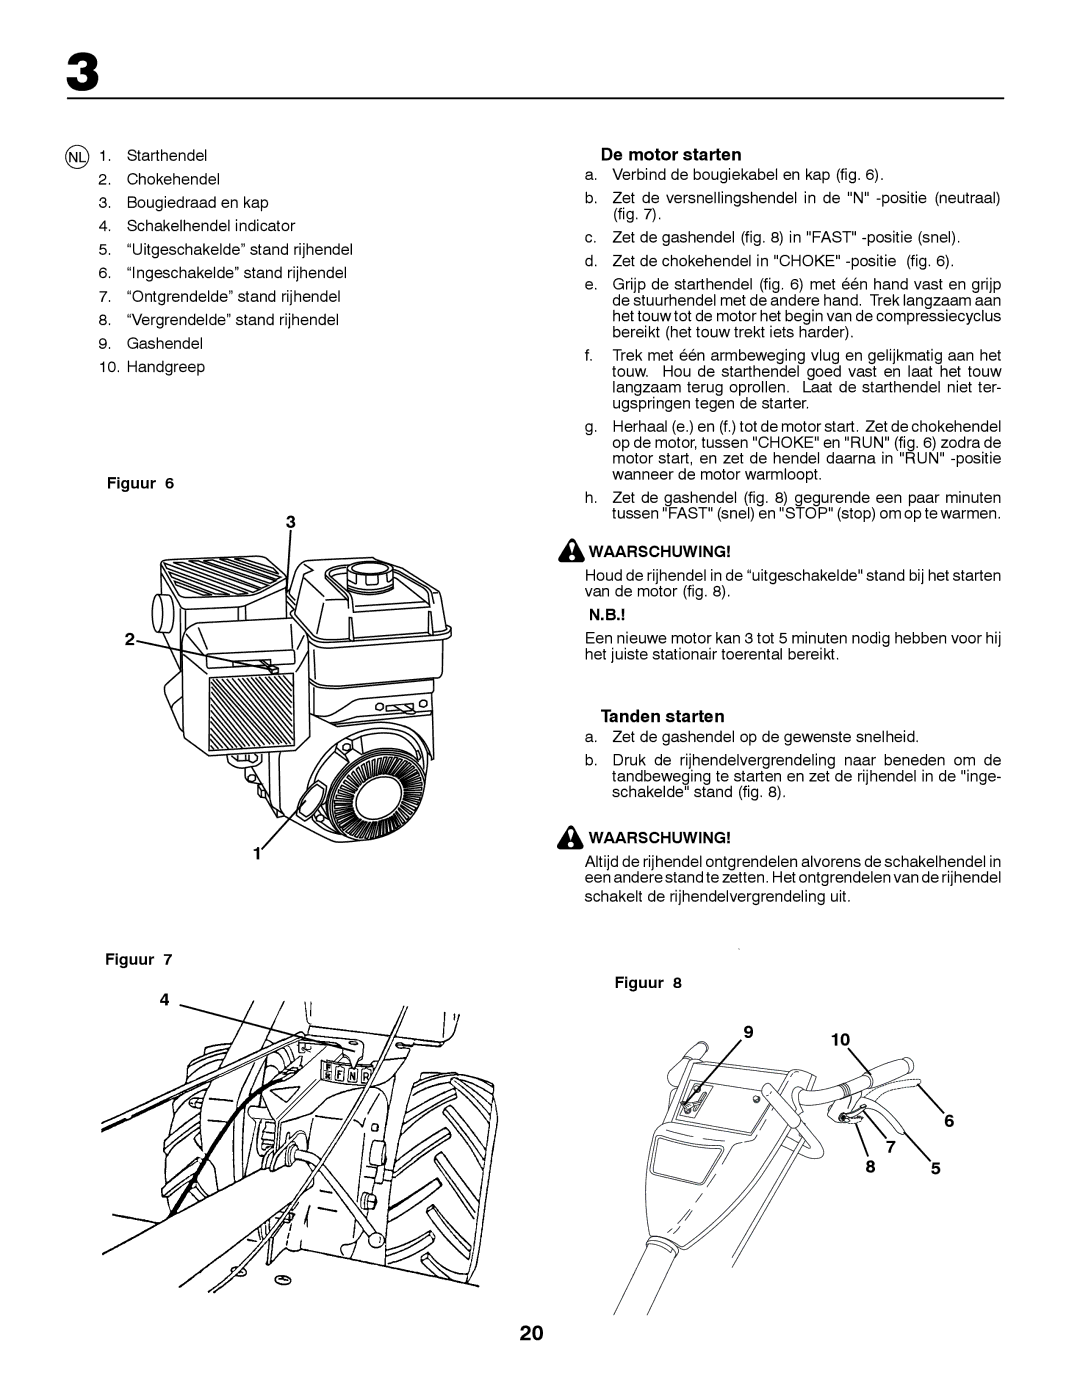 McCulloch MRT6 instruction manual De motor starten, Tanden starten, Waarschuwing 